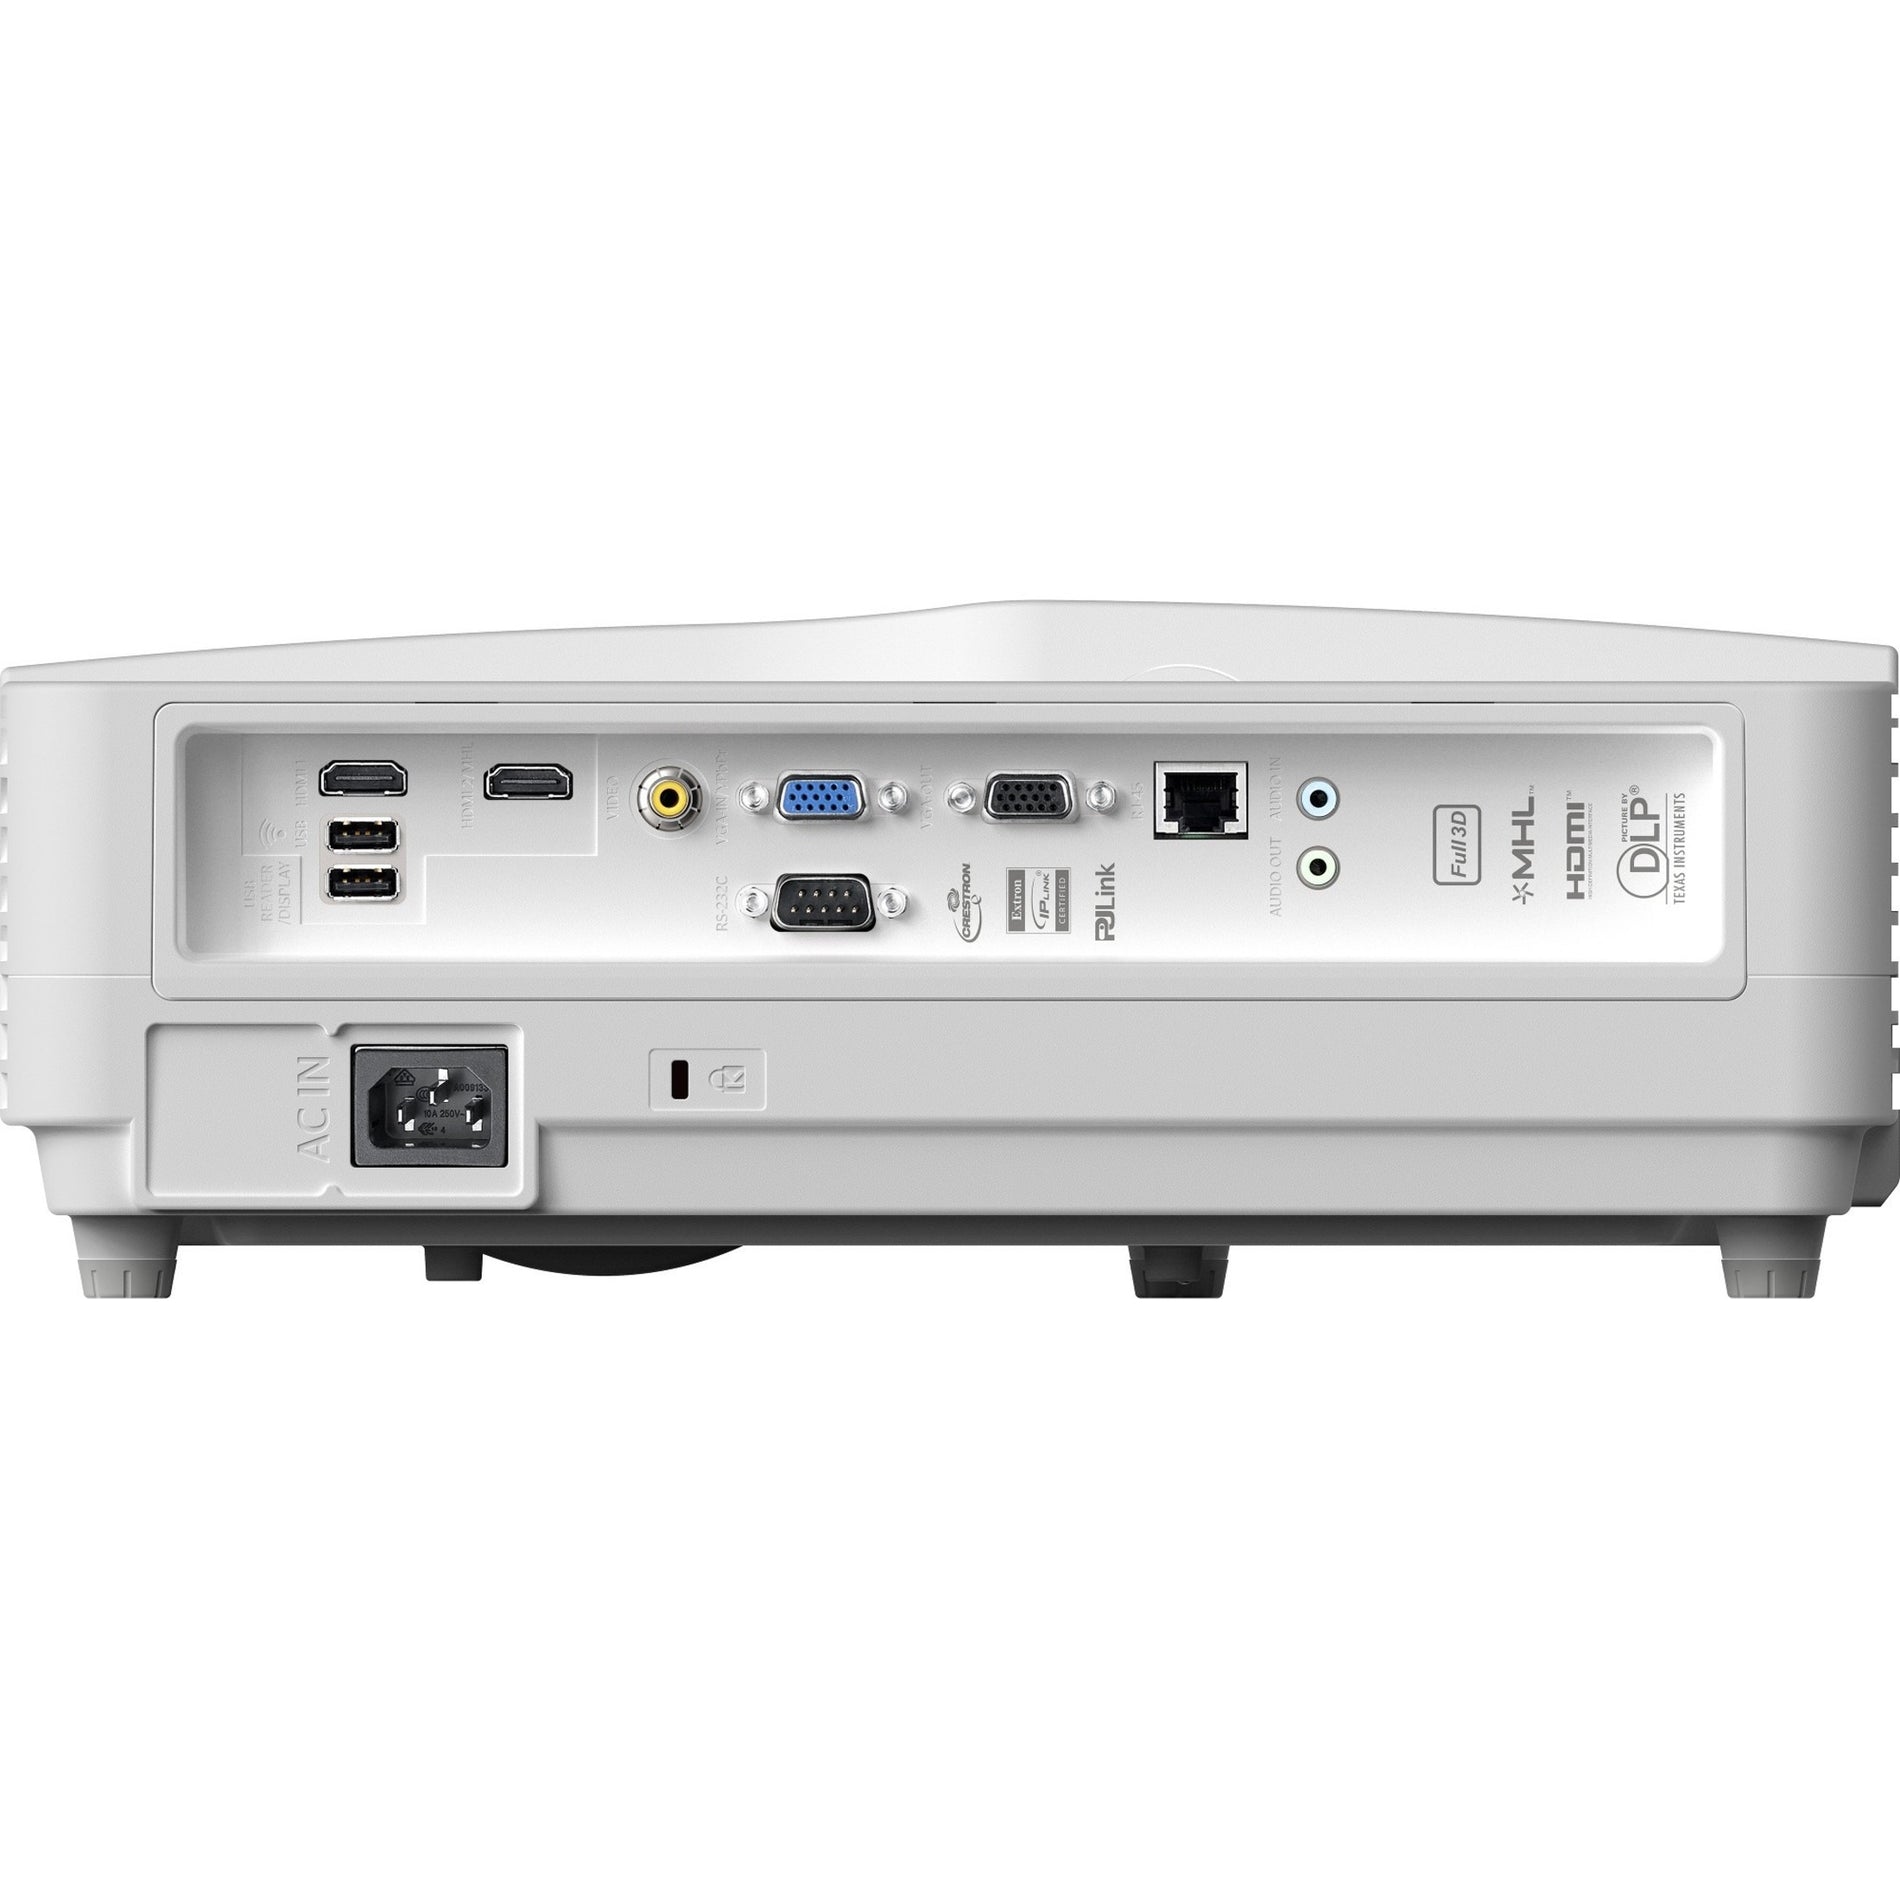 Optoma GT5600 ウルトラショートスロー DLP プロジェクター - フル HD、3600 lm、3D、ワイヤレス LAN Optoma オプトマ